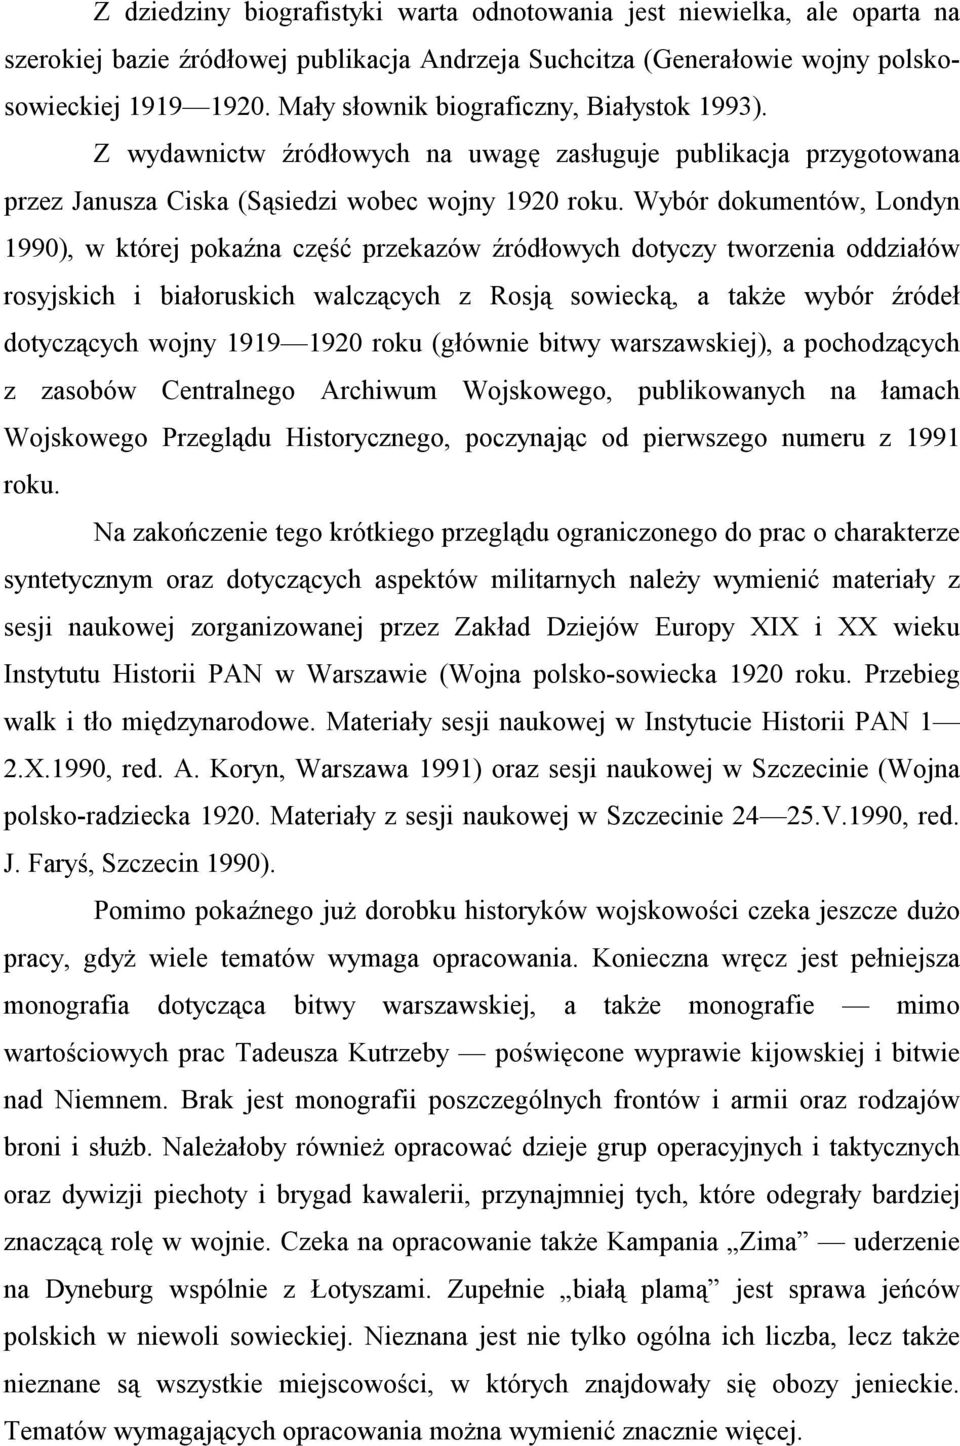 Wybór dokumentów, Londyn 1990), w której pokaźna część przekazów źródłowych dotyczy tworzenia oddziałów rosyjskich i białoruskich walczących z Rosją sowiecką, a także wybór źródeł dotyczących wojny